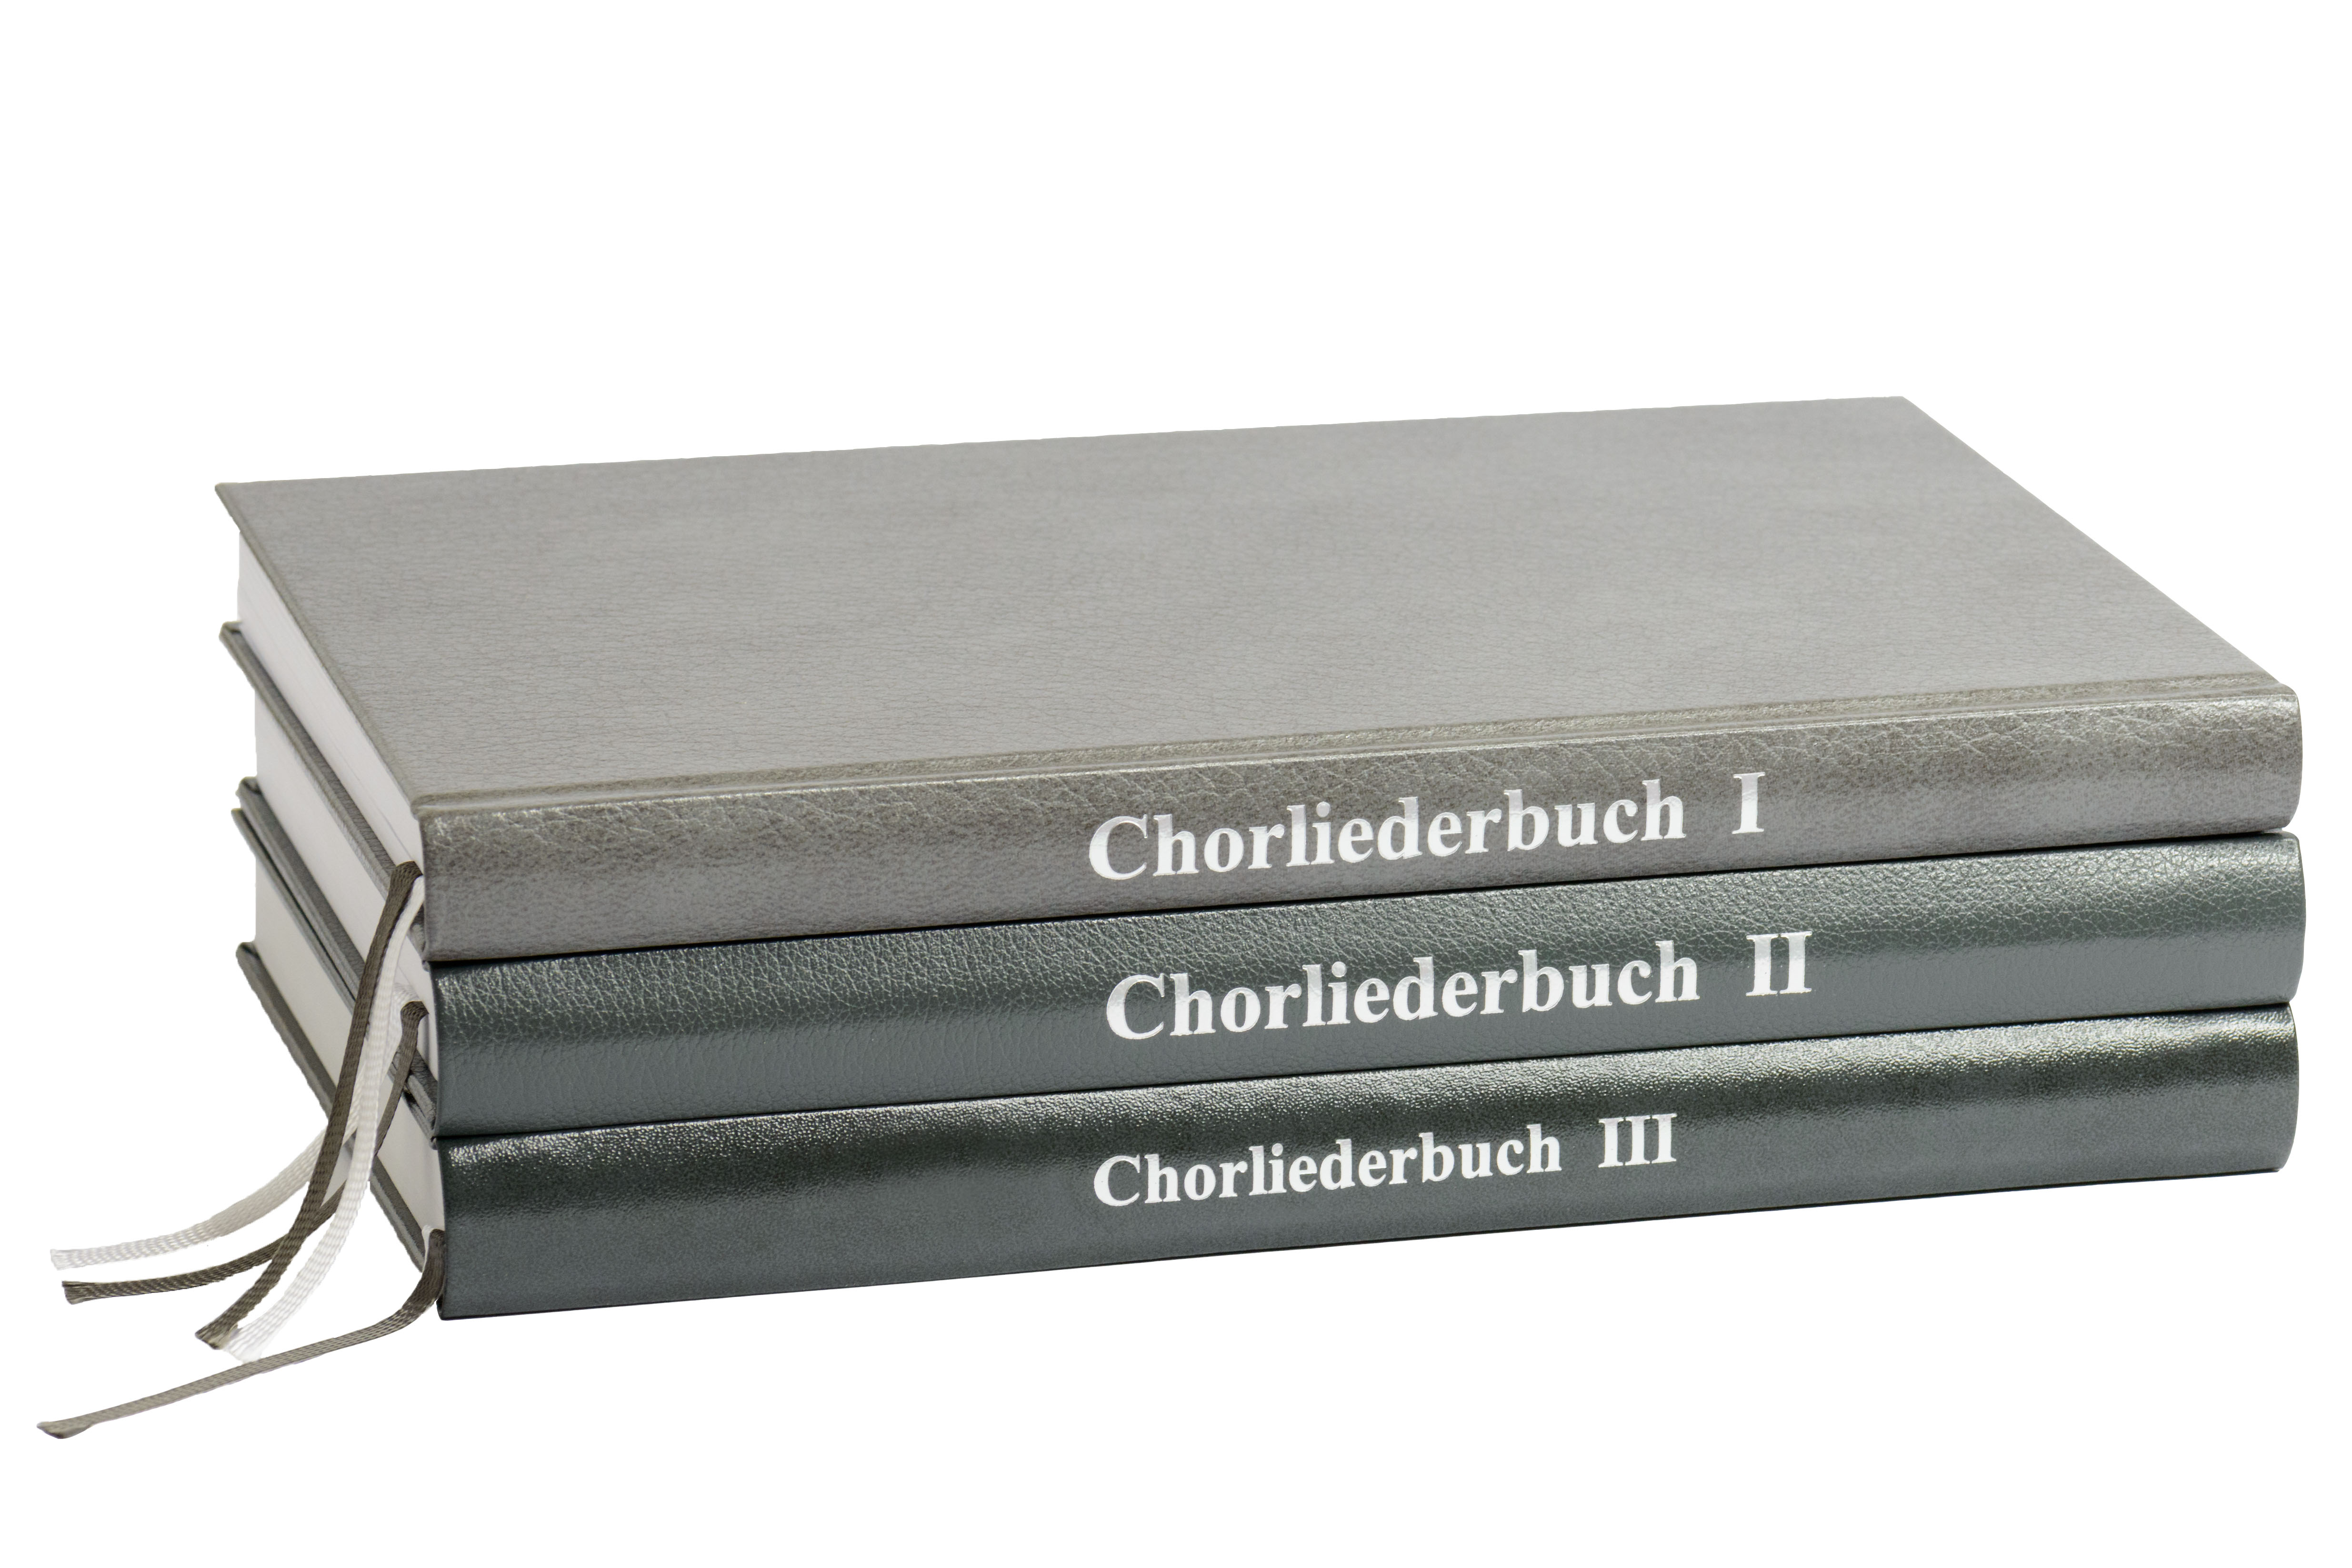 Chorliederbuch II